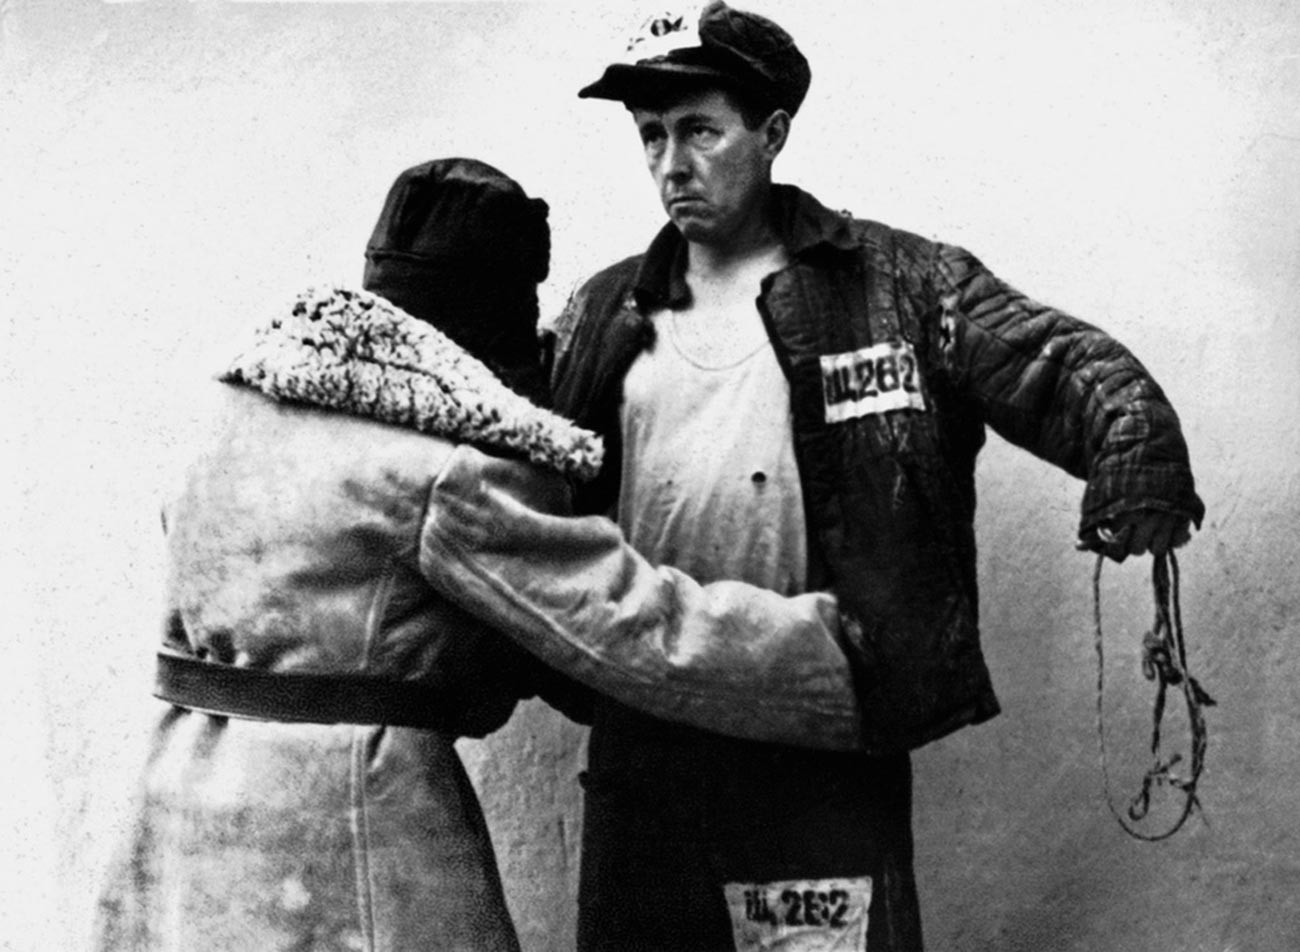 Alexander Solzhenitsyn in the Gulag